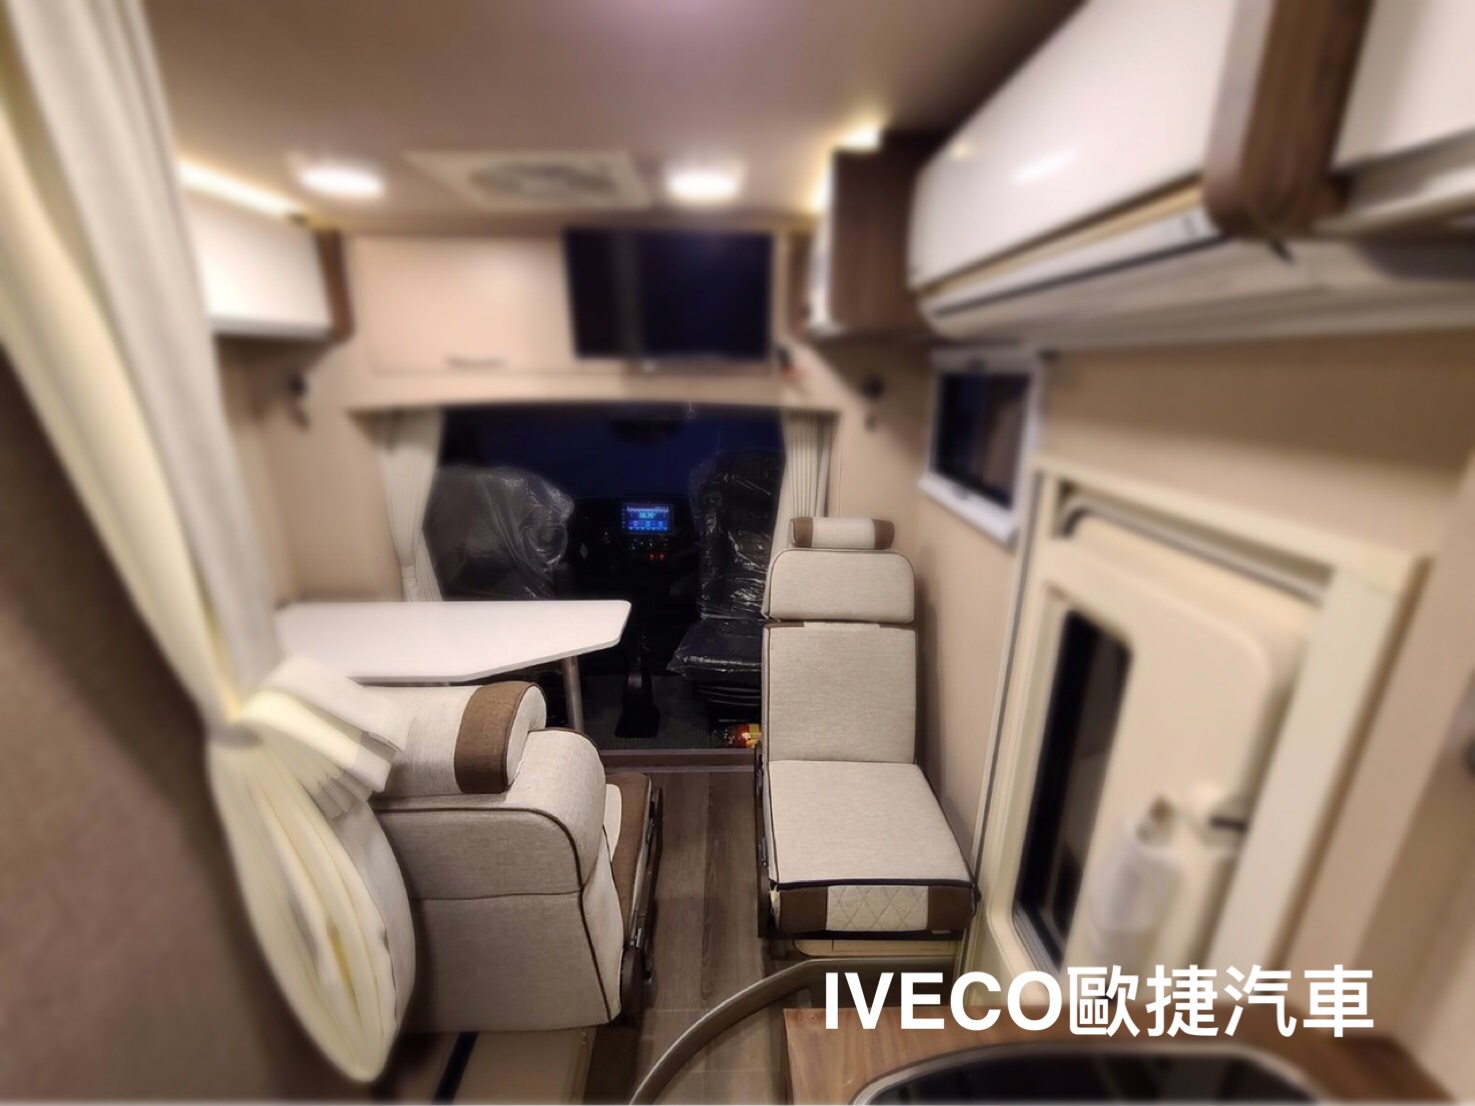 台中露營車改裝將IVECO打造成旅遊露營小幫手